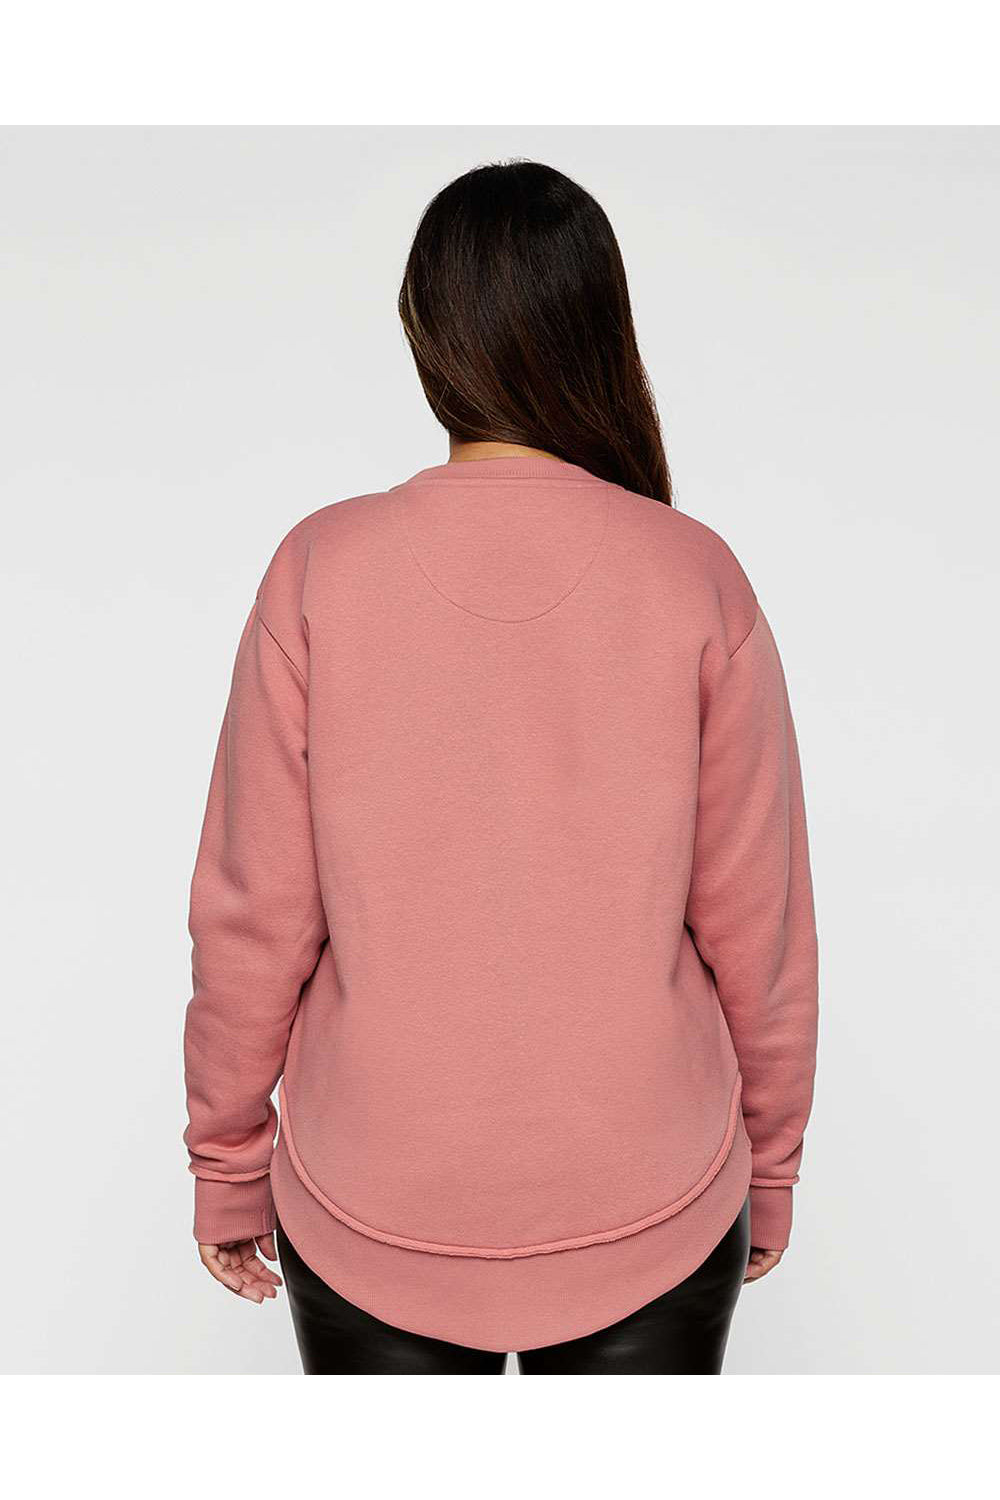 LAT 3525 Womens Weekend Fleece Crewneck Sweatshirt Mauvelous Pink Model Back